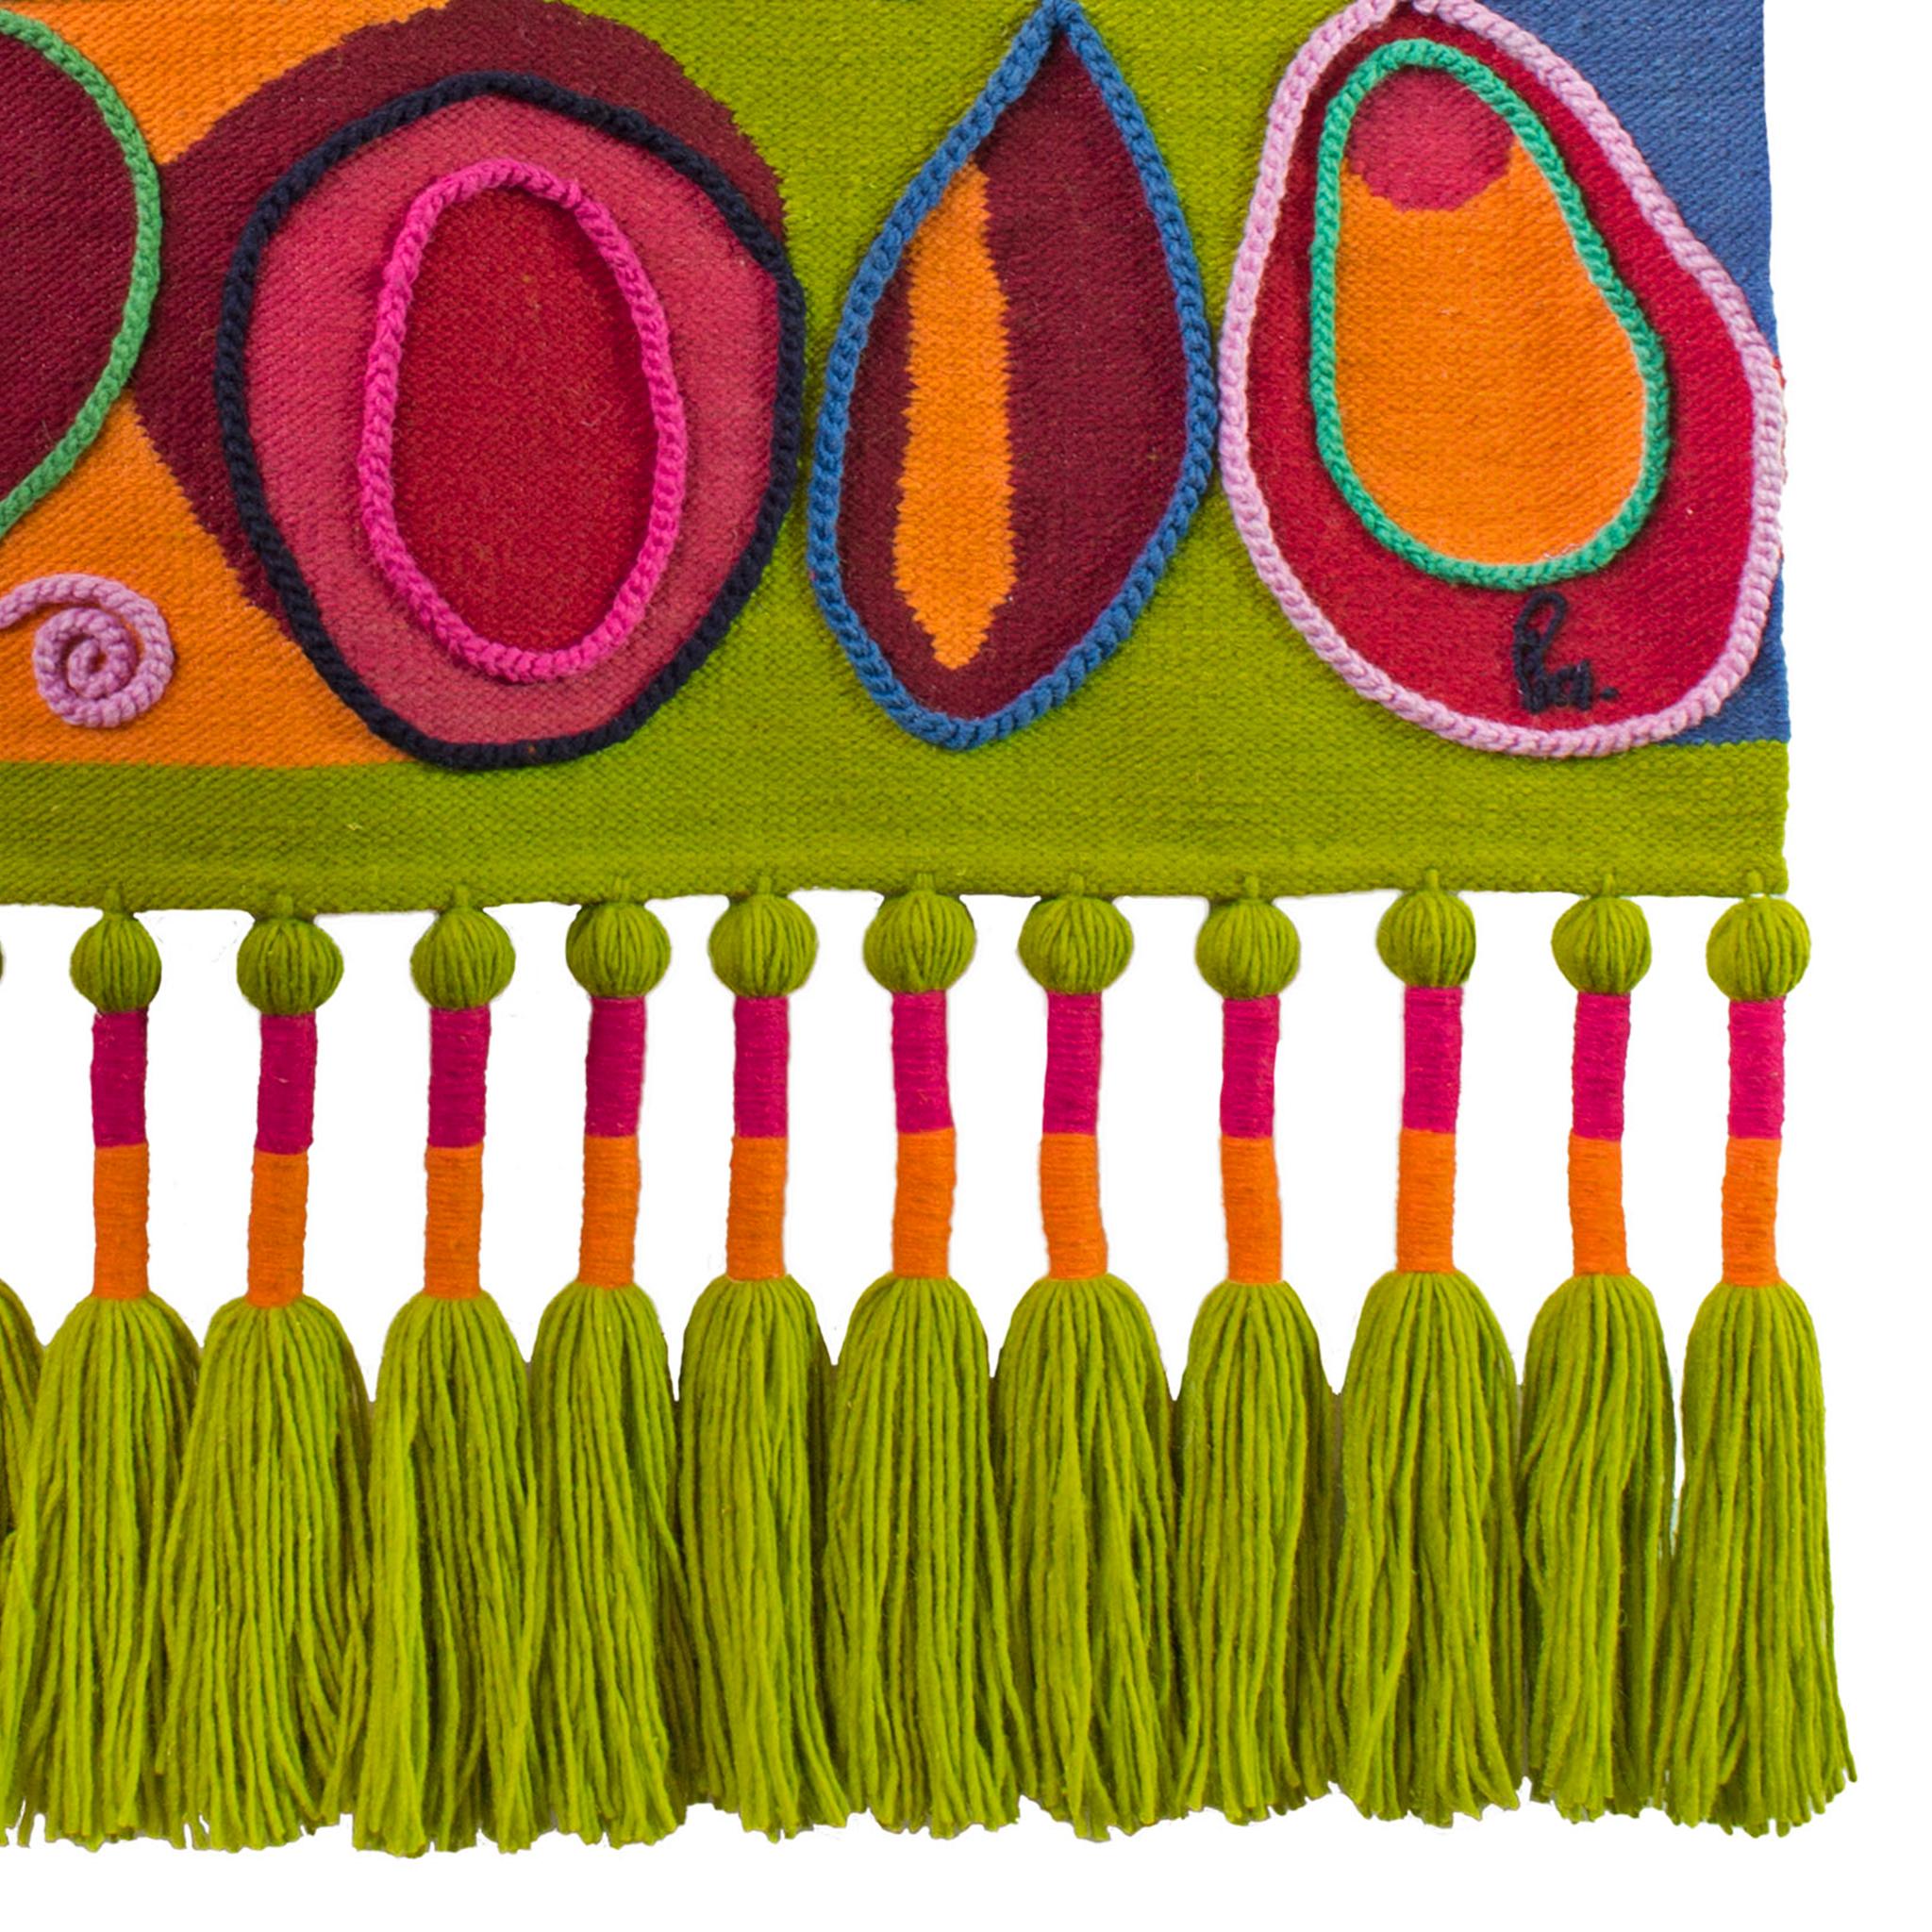 Der Frutas-Wandteppich aus 100 % ecuadorianischer Schafswolle ist ein Zeugnis traditioneller Kunstfertigkeit. Handgewebt und sorgfältig mit farbechten Pigmenten gefärbt, ist jedes Stück ein einzigartiger Ausdruck von Können und Kreativität. Dieser